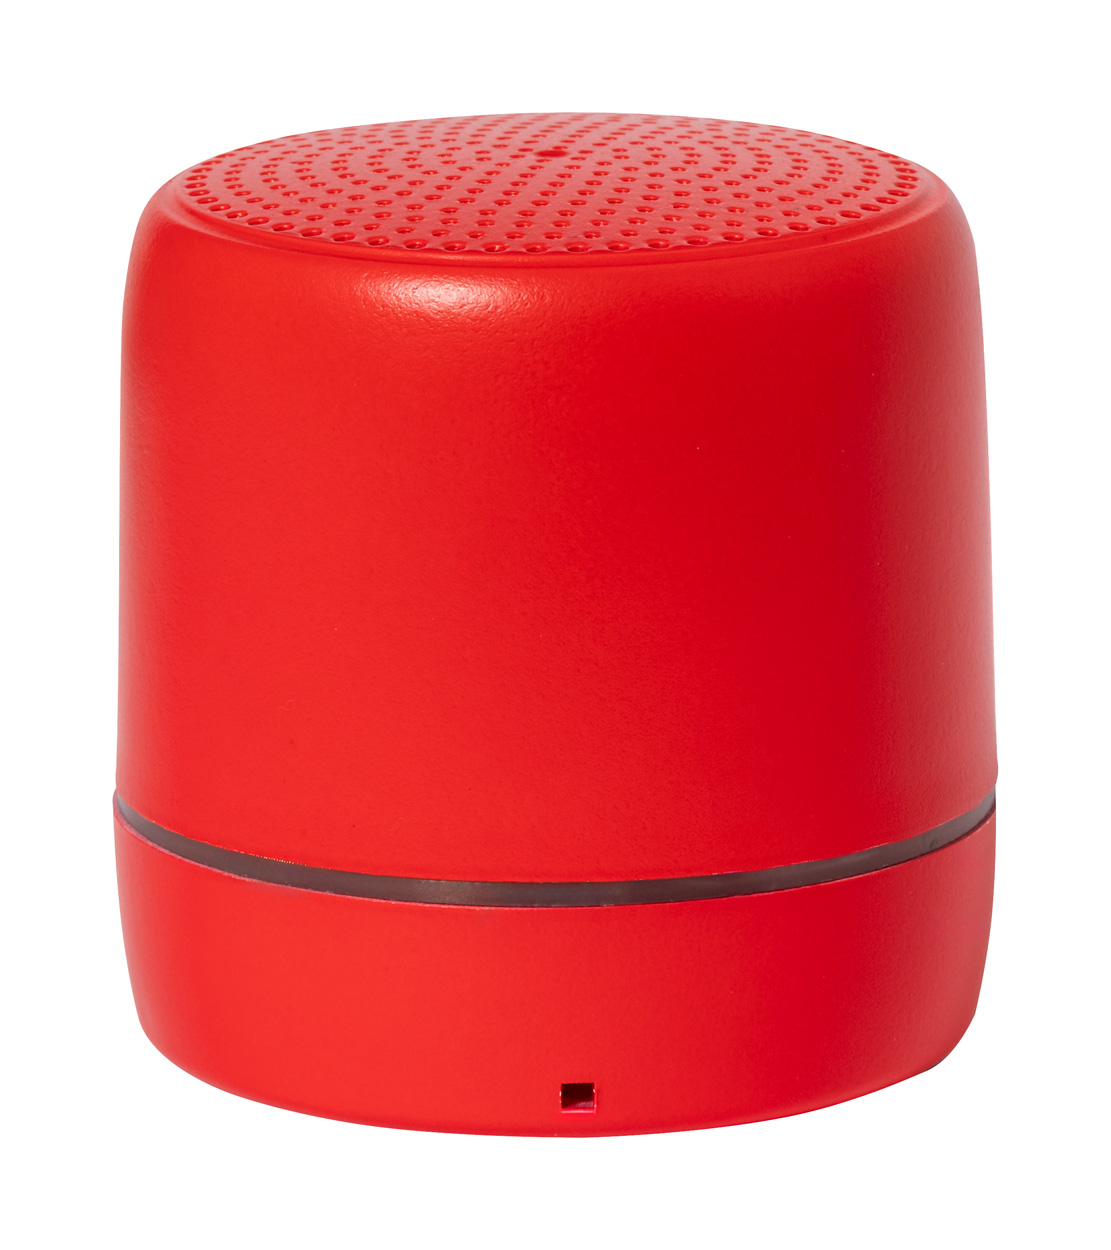 Kucher bluetooth speaker - red